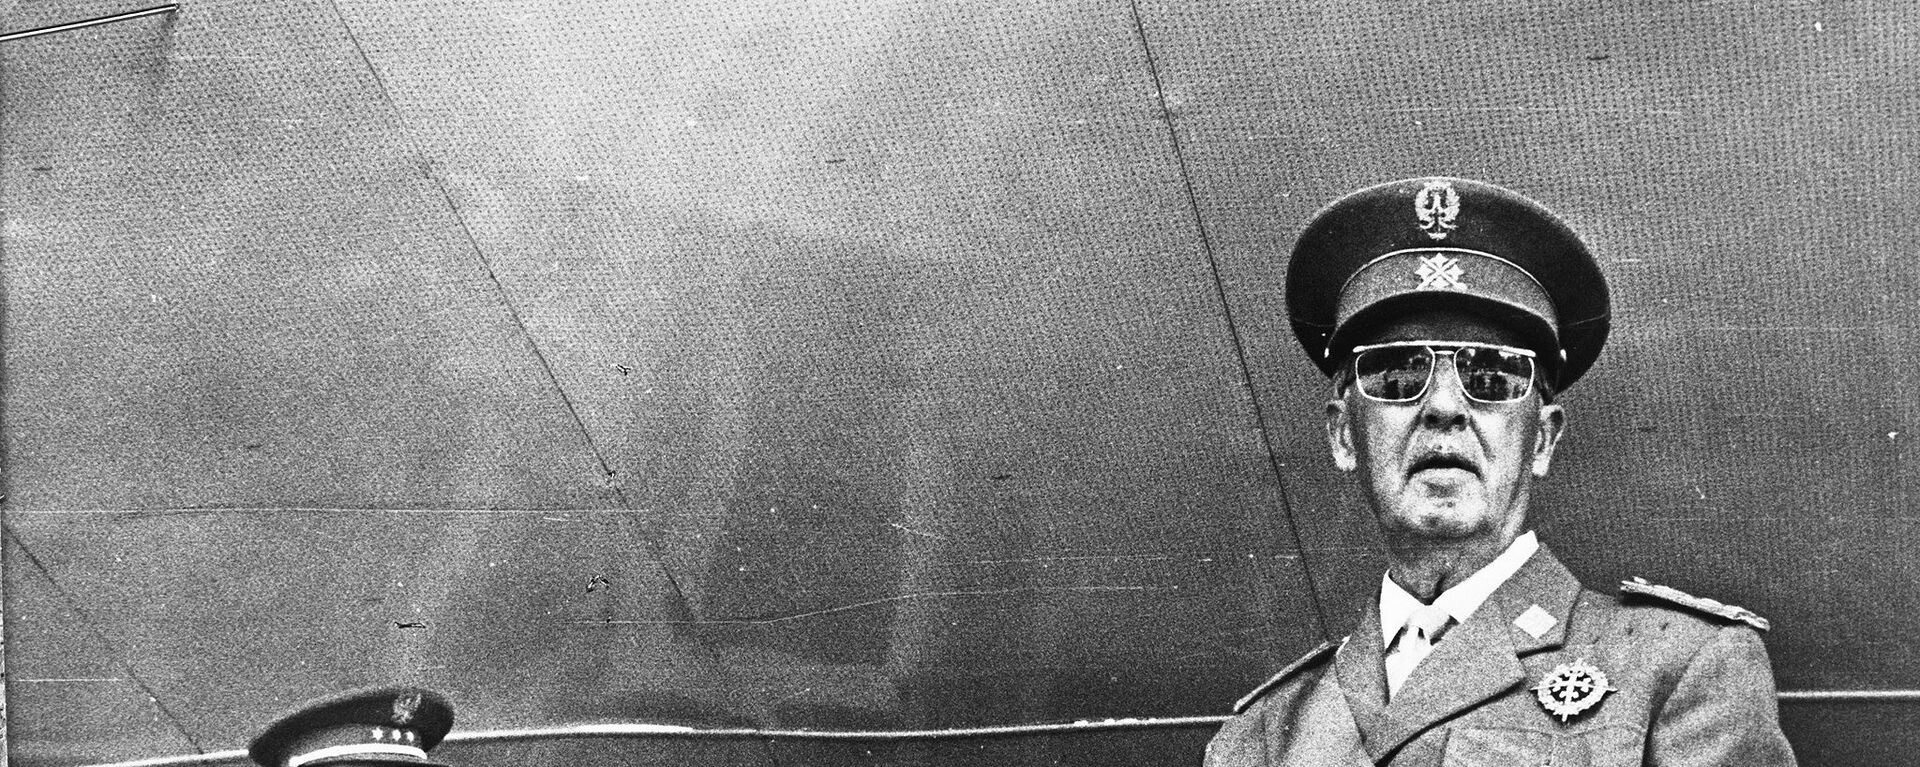 Francisco Franco, dictador español  - Sputnik Mundo, 1920, 28.07.2021